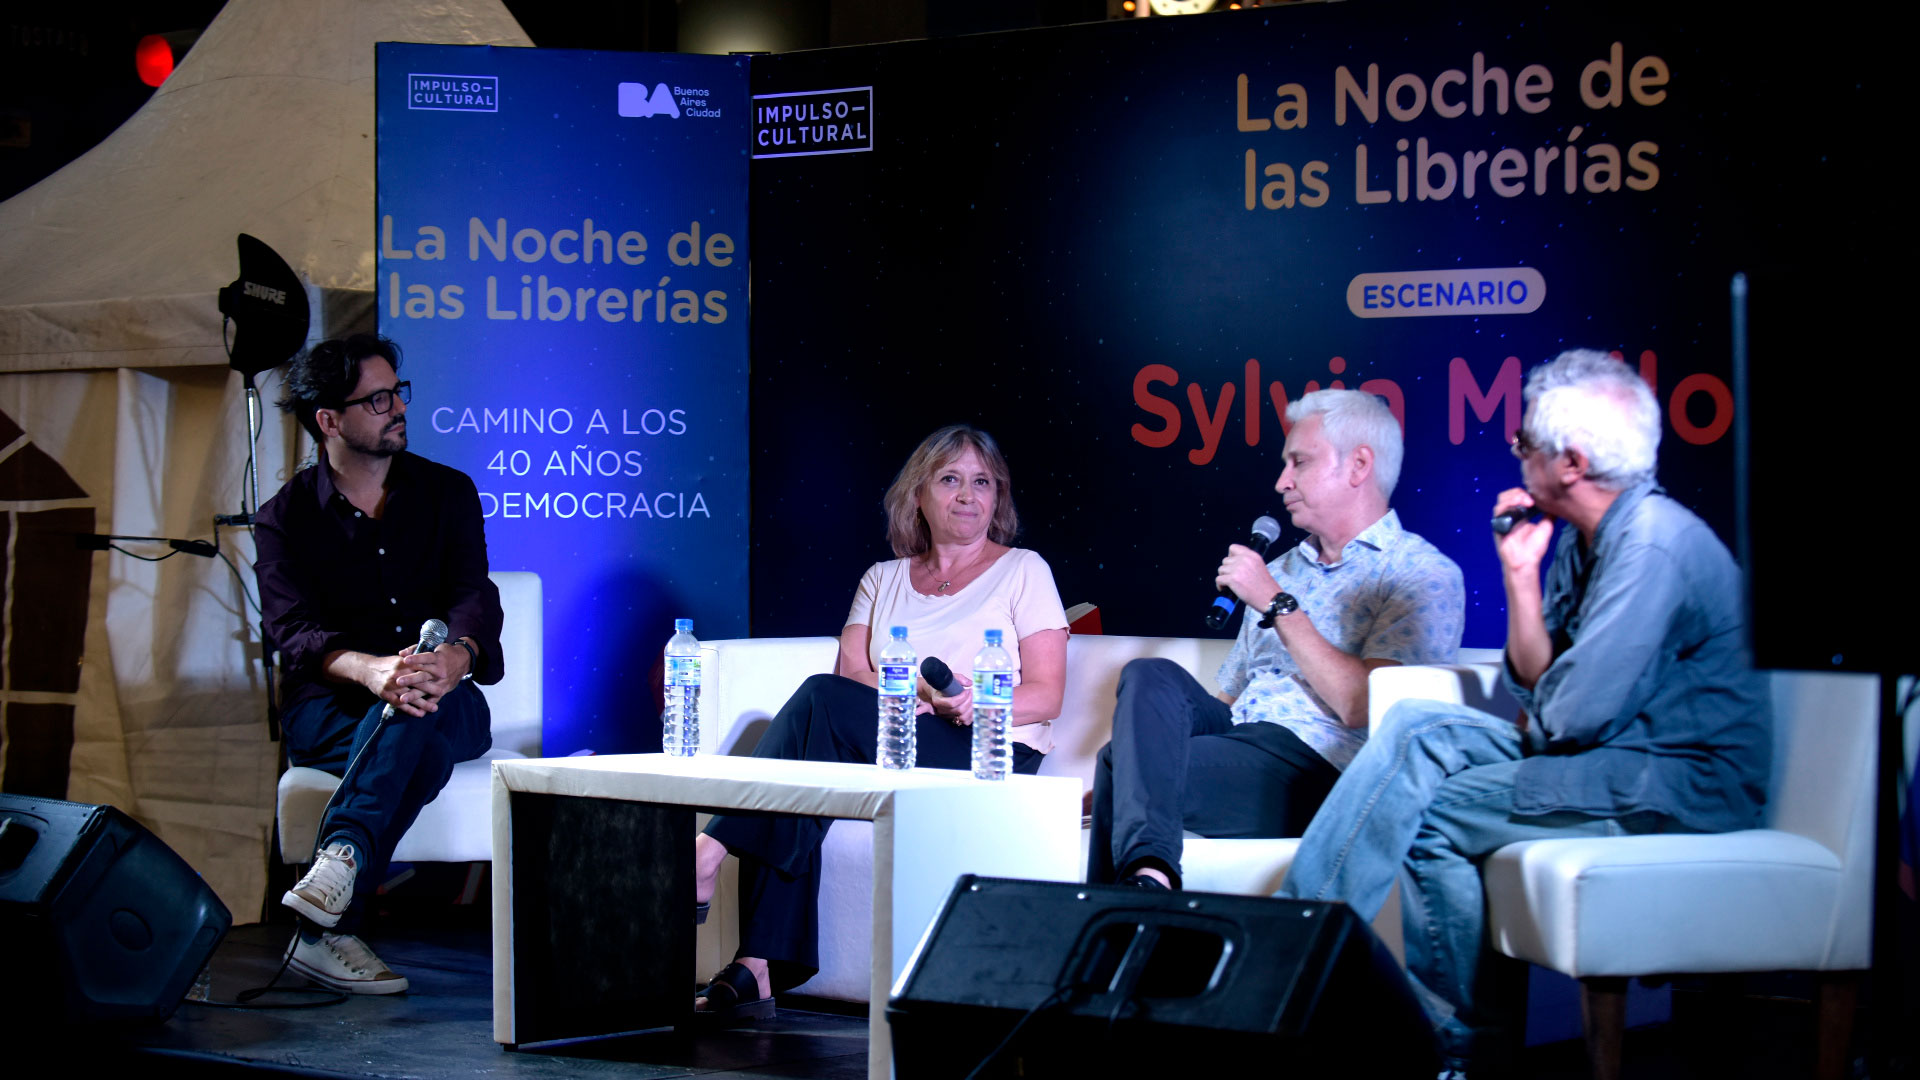 Patricio Zunini moderó la charla sobre medio y democracia, en "La noche de las librerías" en la que participaron los periodistas Hinde Pomeraniec, Juan Di Natale y Bobby Flores (Gustavo Gavotti)